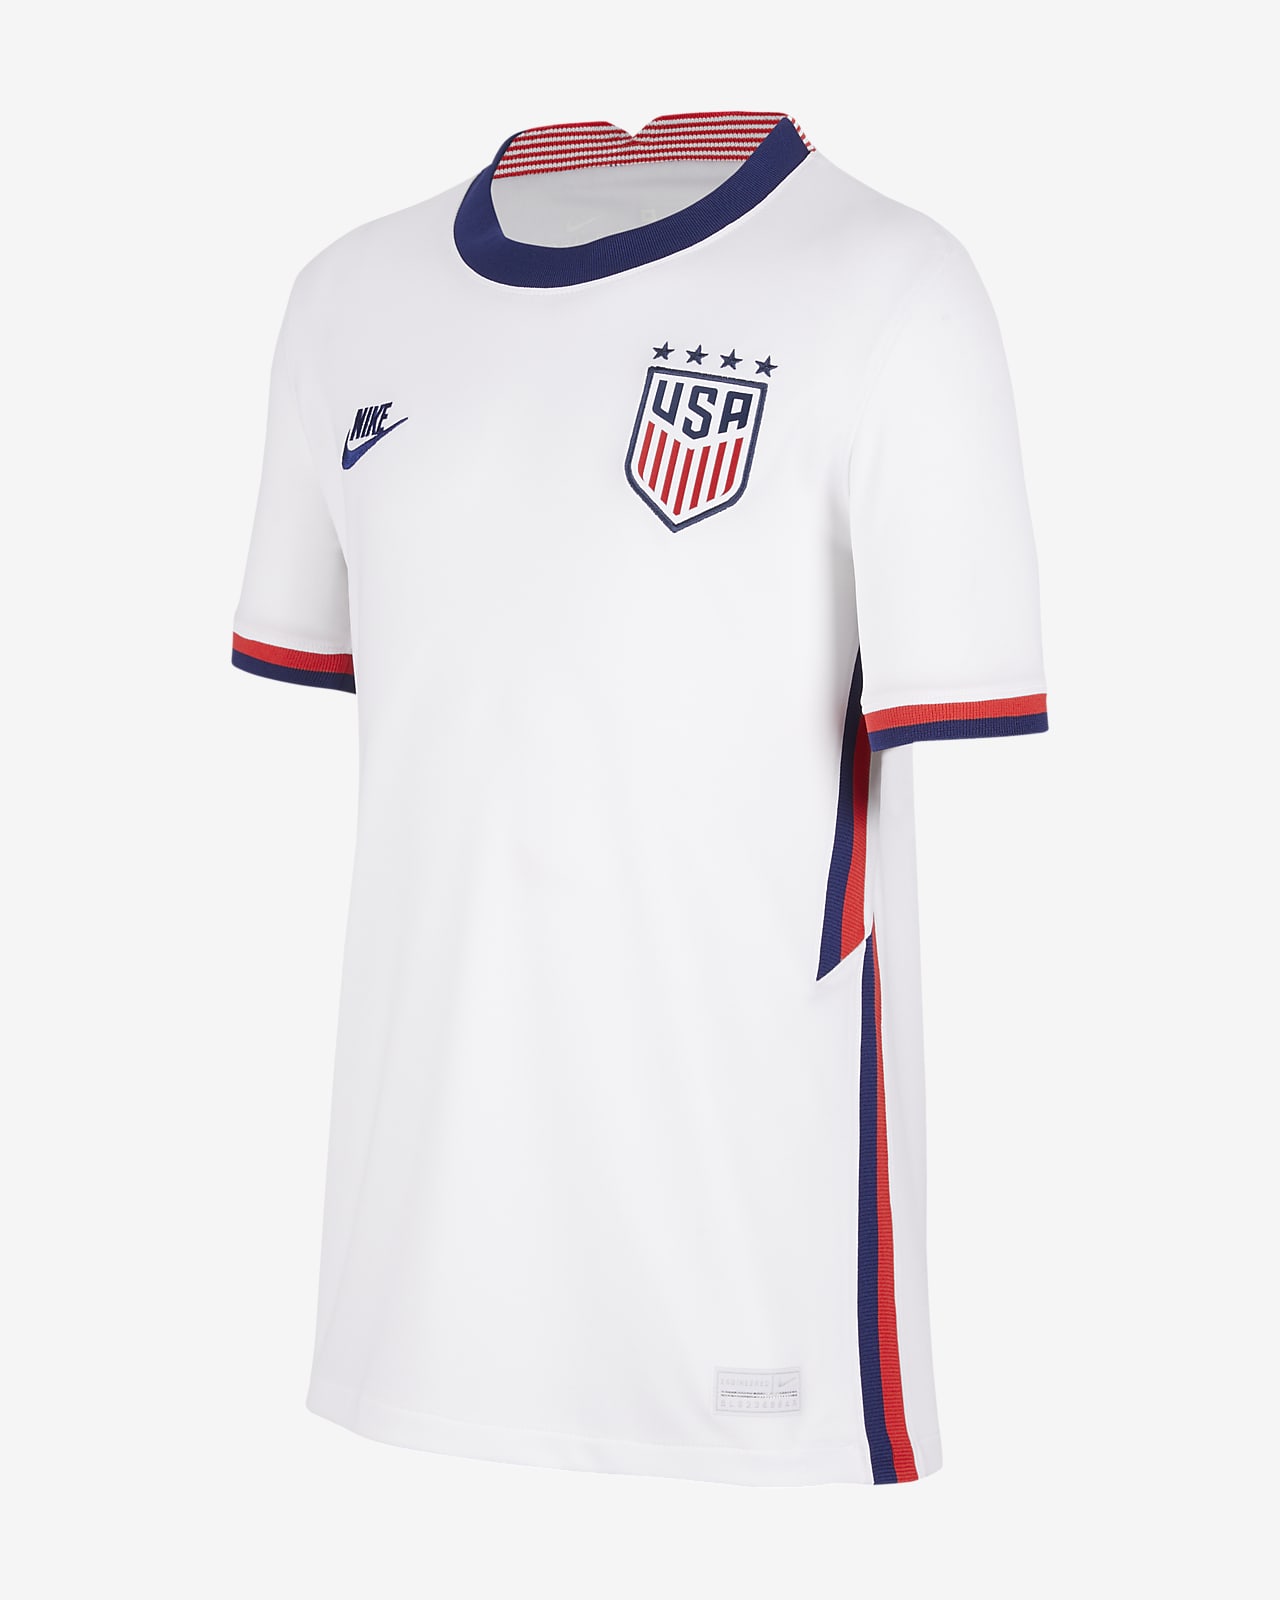 us soccer kit 2020